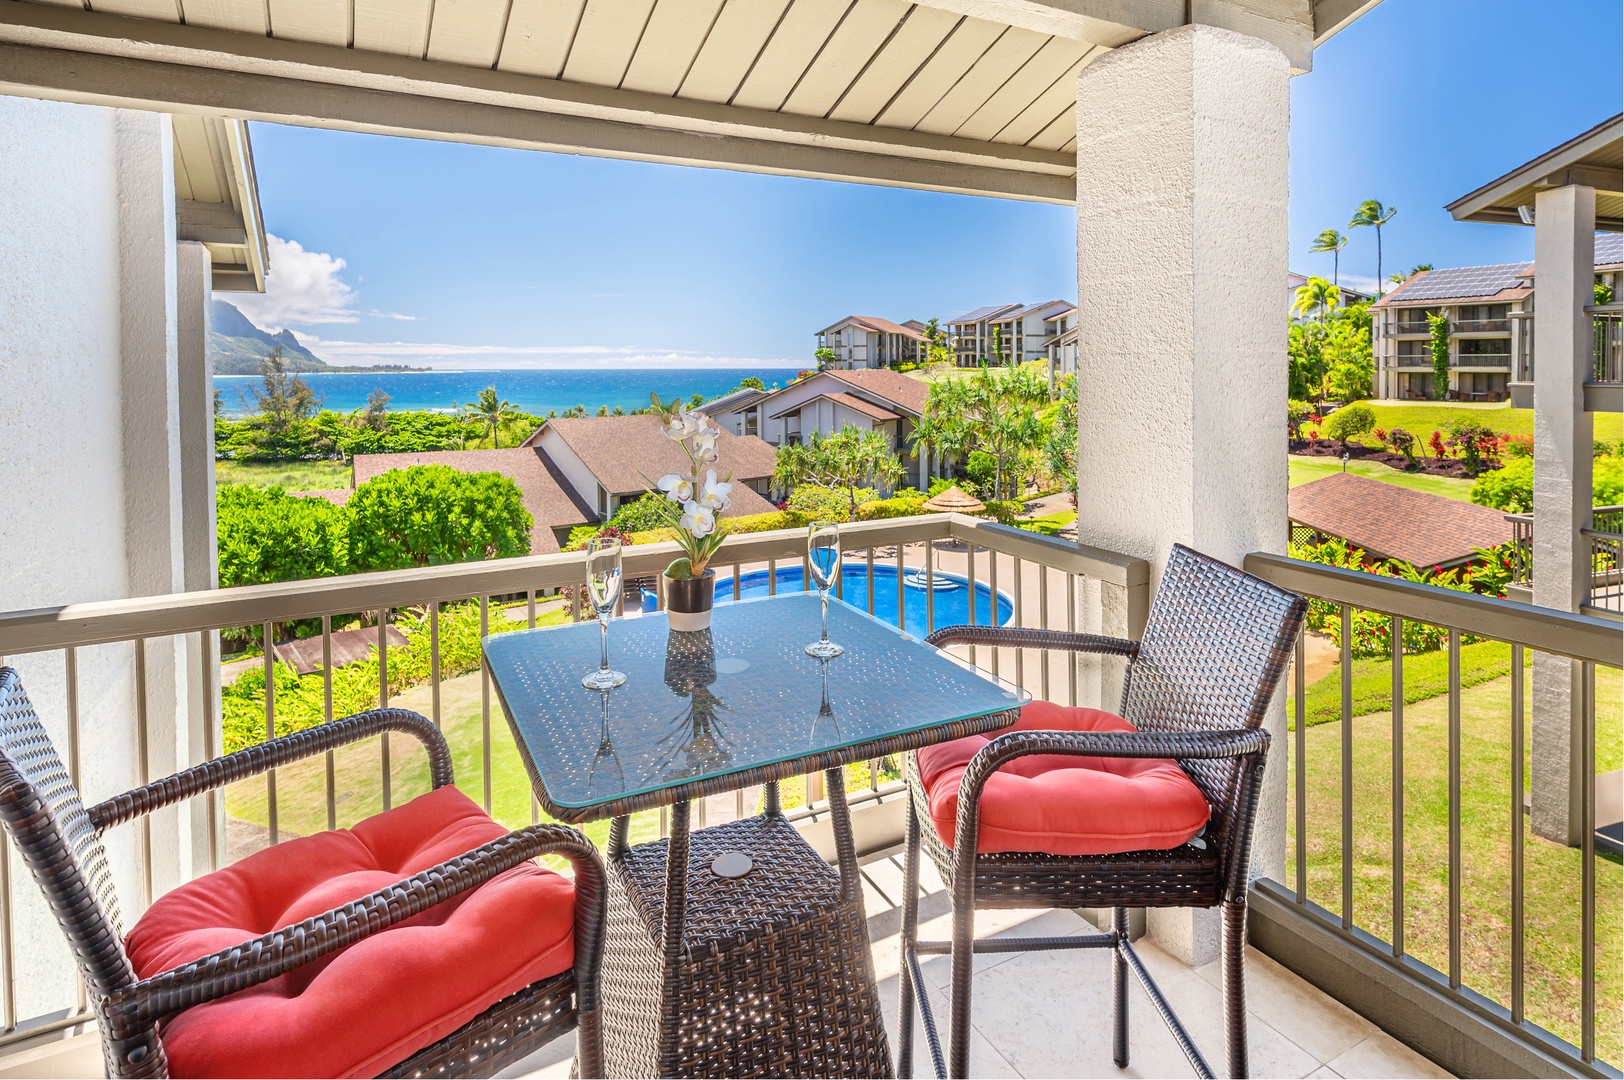 Princeville Vacation Rentals, Hanalei Bay Resort 7307/08 - Junior Suite Lanai View